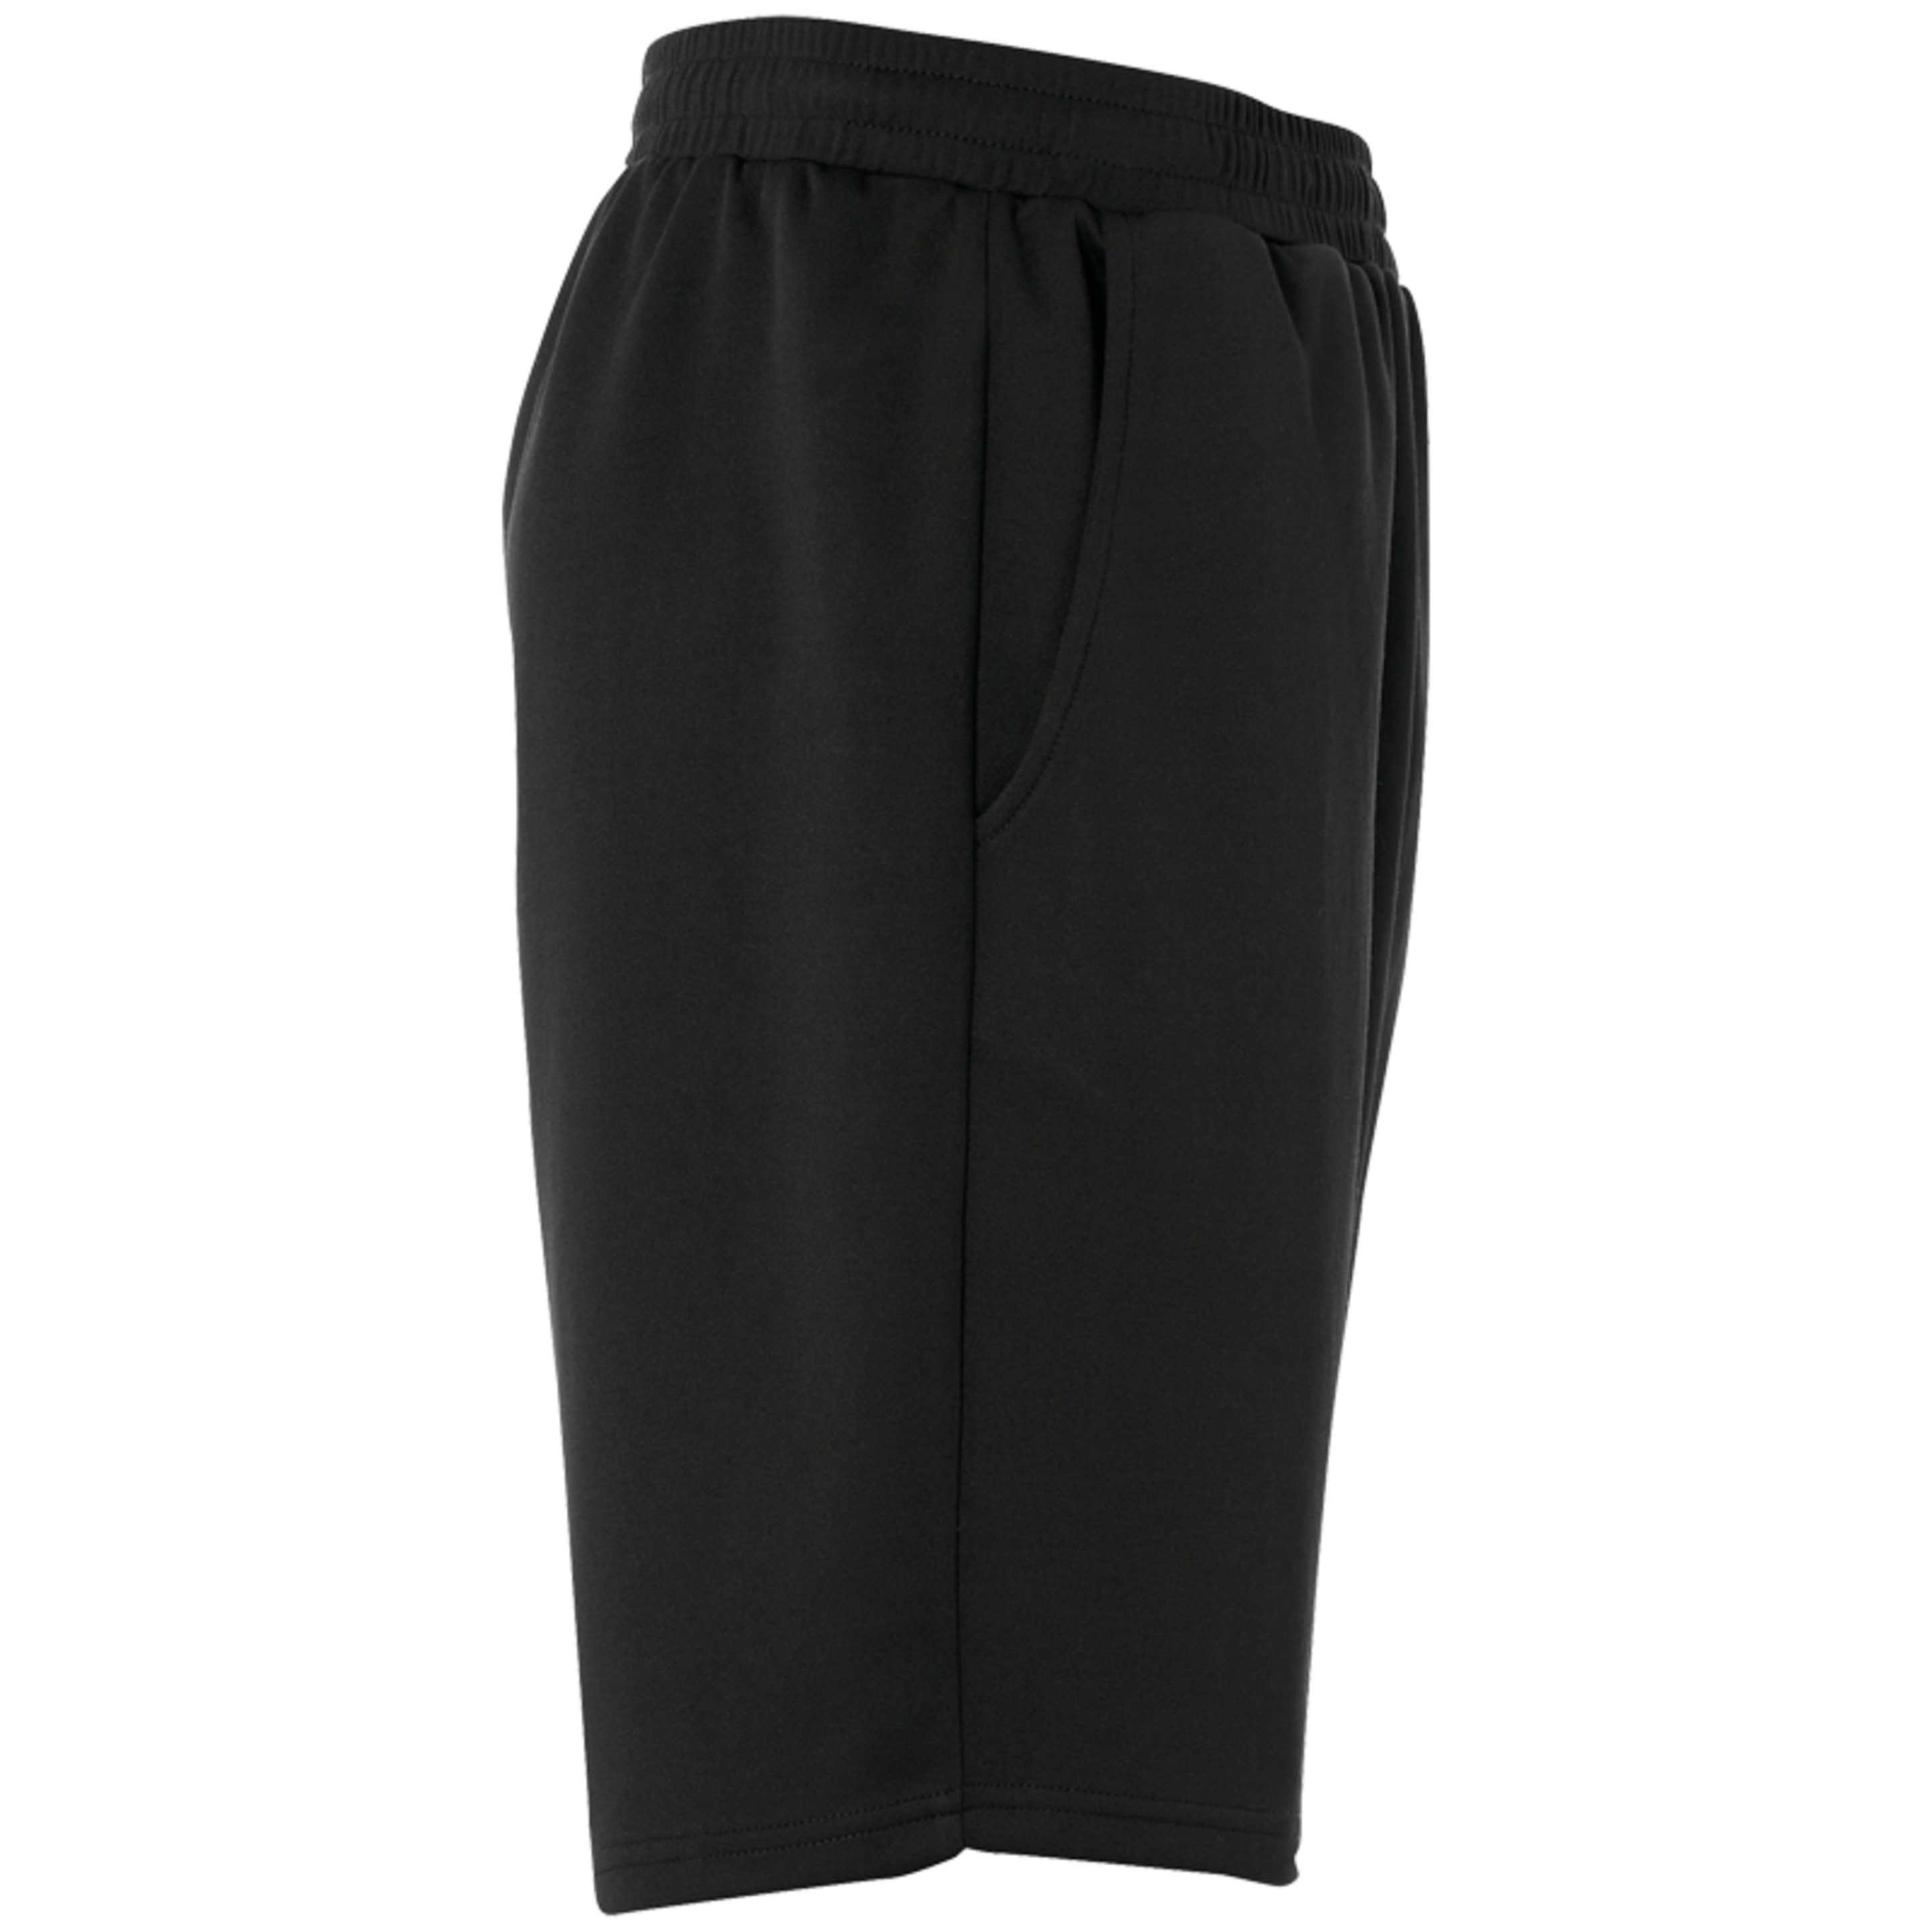 Essential Pes-shorts Black Uhlsport